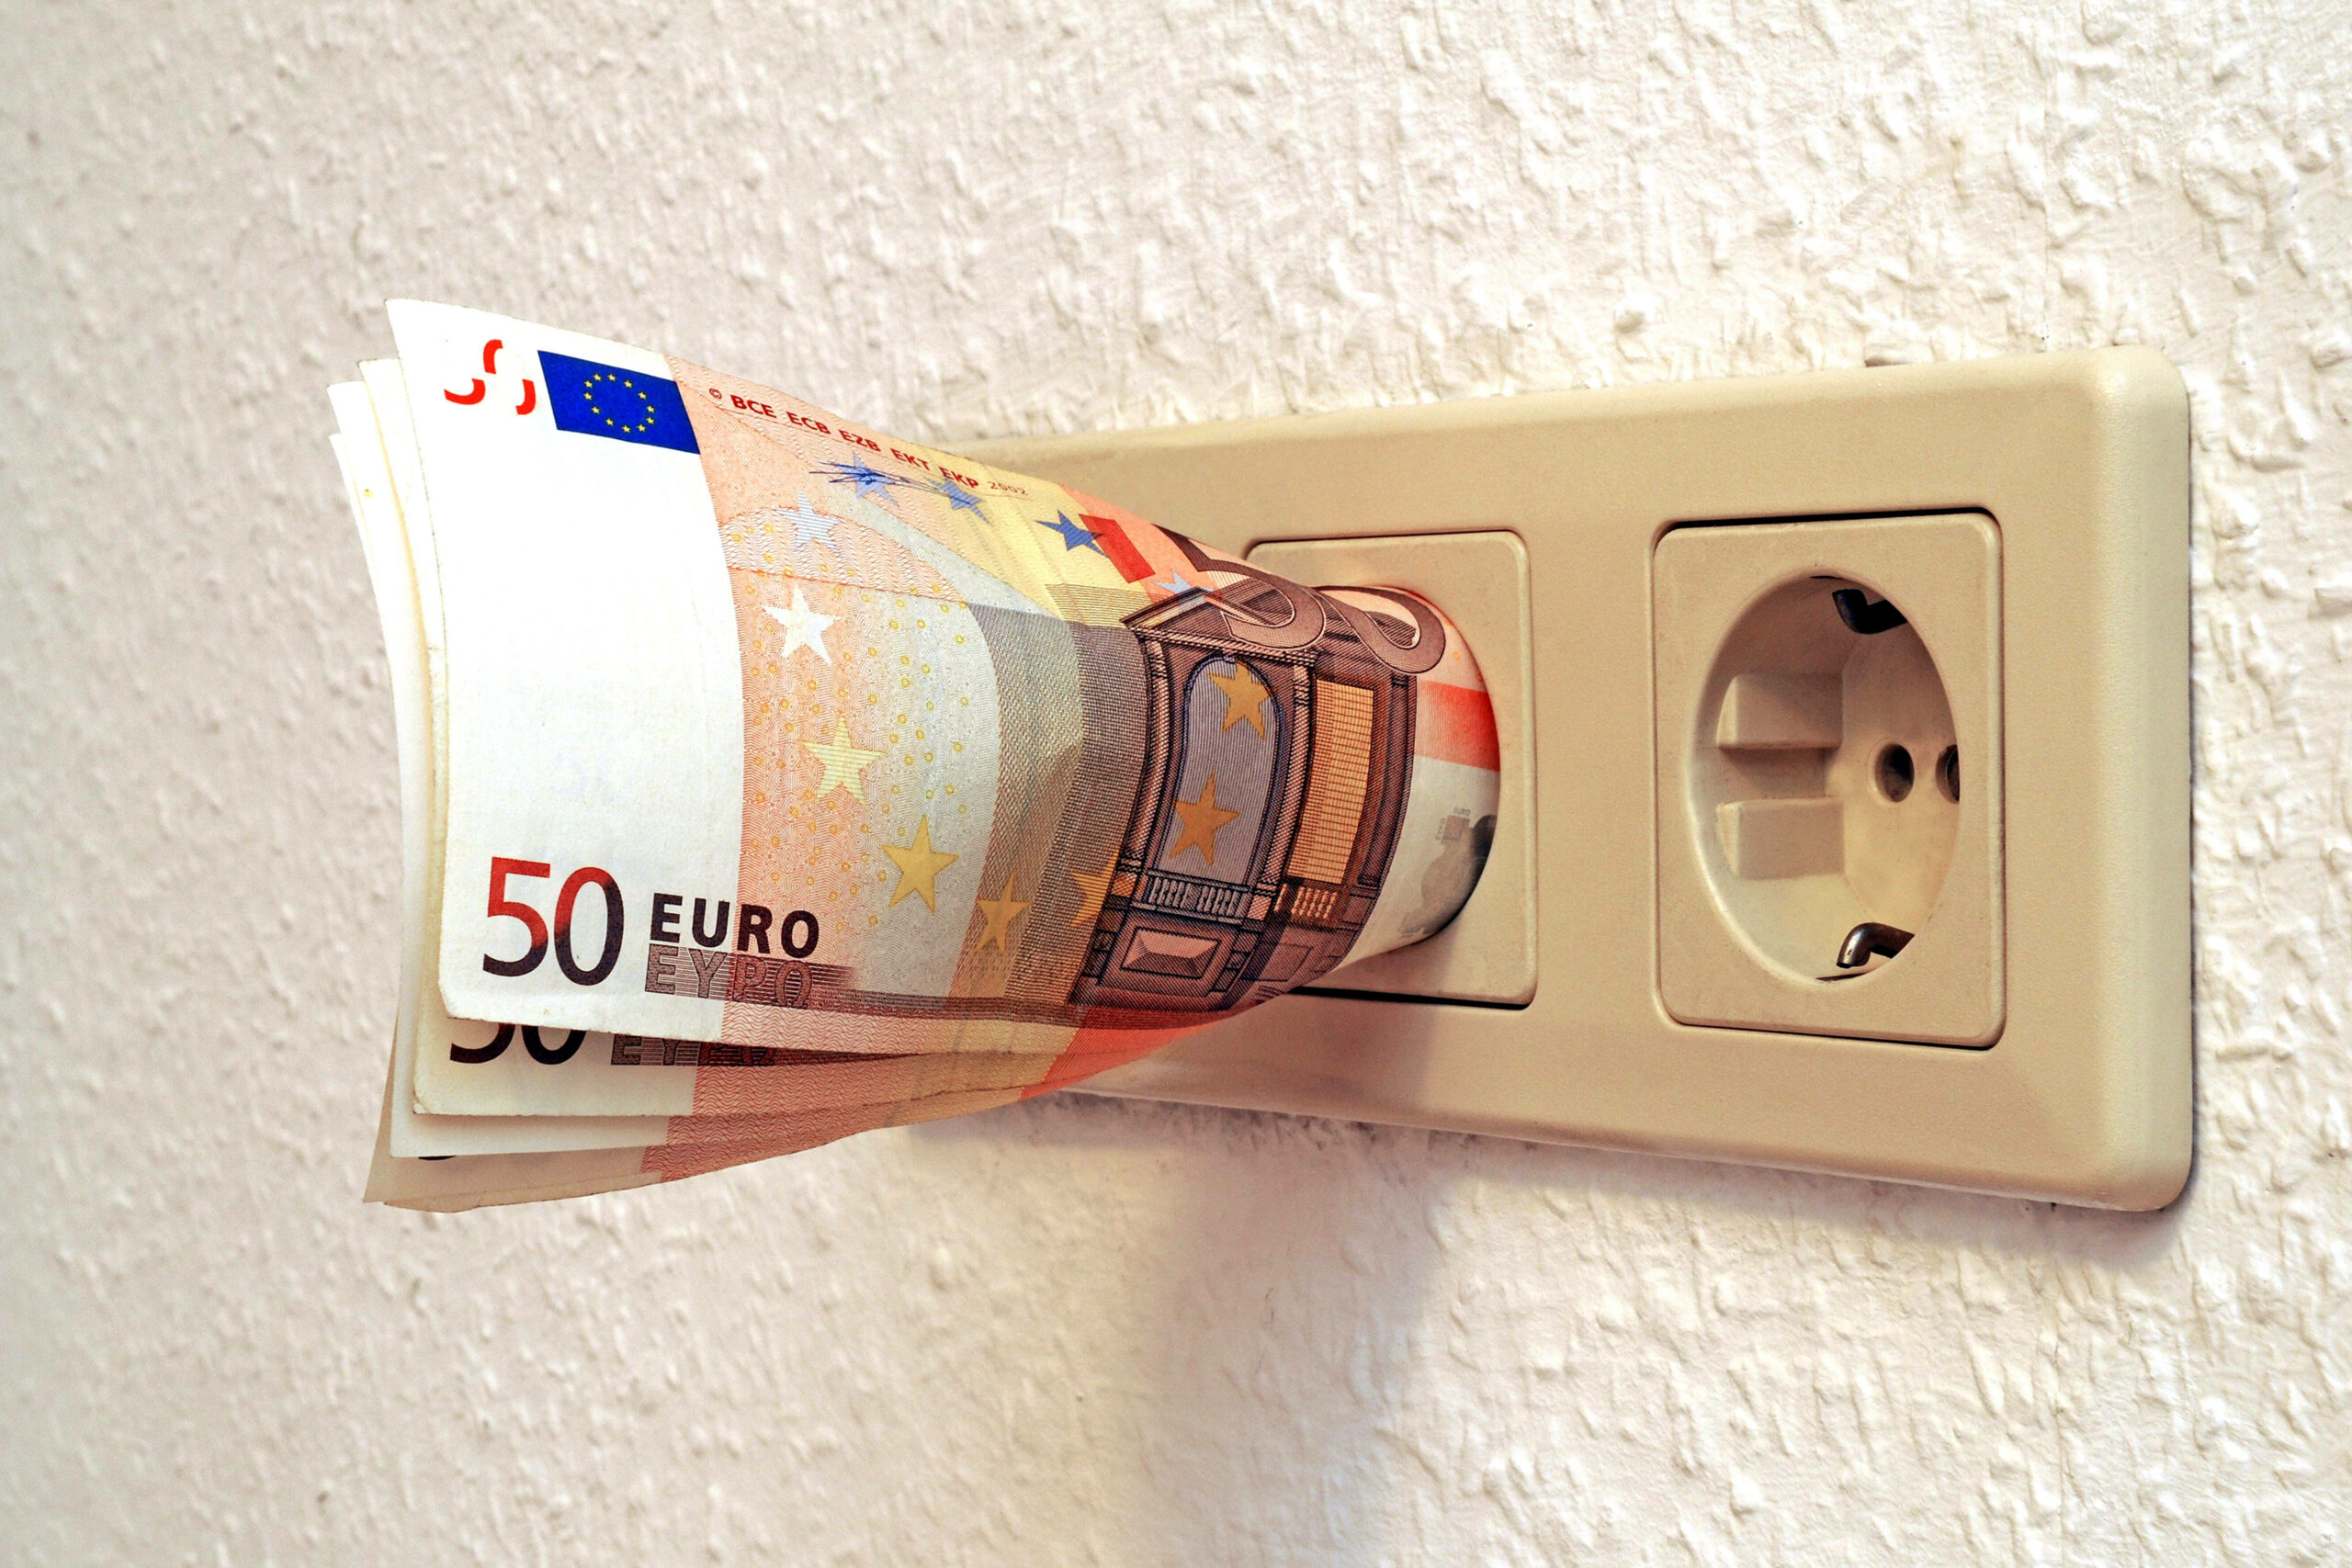 Die Energiepreise steigen und steigen. Für Anbieter gelten dennoch gewisse Regeln, mahnt die Verbraucherzentrale Hamburg. (Symbolbild): 50-Euro-Scheine stecken in einer Steckdose